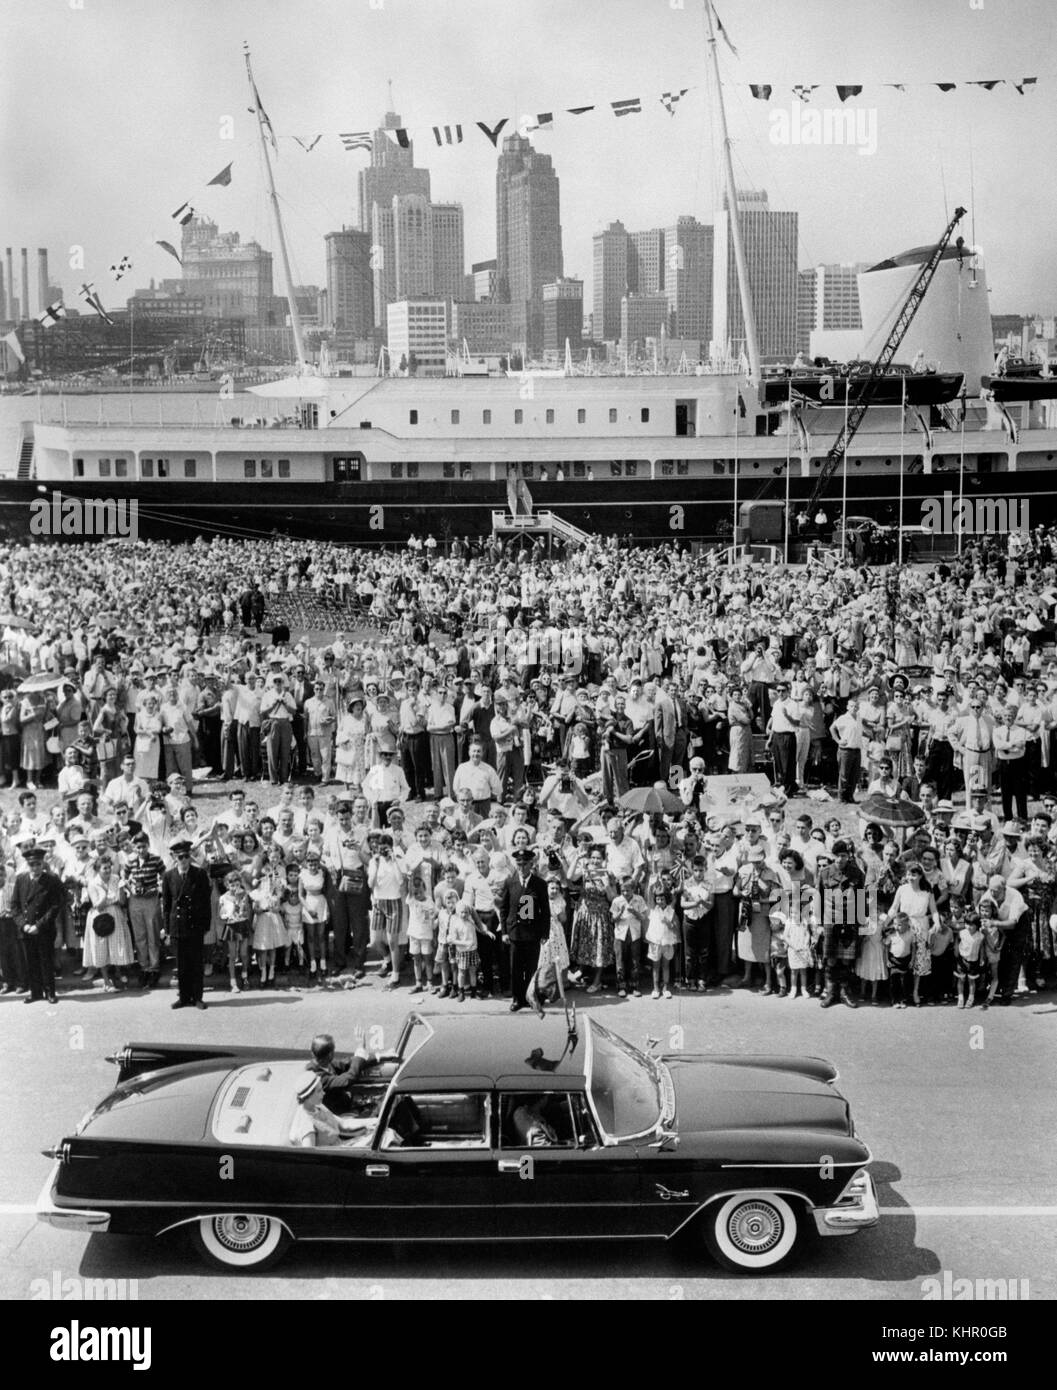 06/07/1959. Königin Elizabeth II. Und der Herzog von Edinburgh, mit der Royal Yacht Britannia im Hintergrund, während der Royal Tour of Canada. Das Königspaar feiert am 20. November seinen Platin-Hochzeitstag. Stockfoto